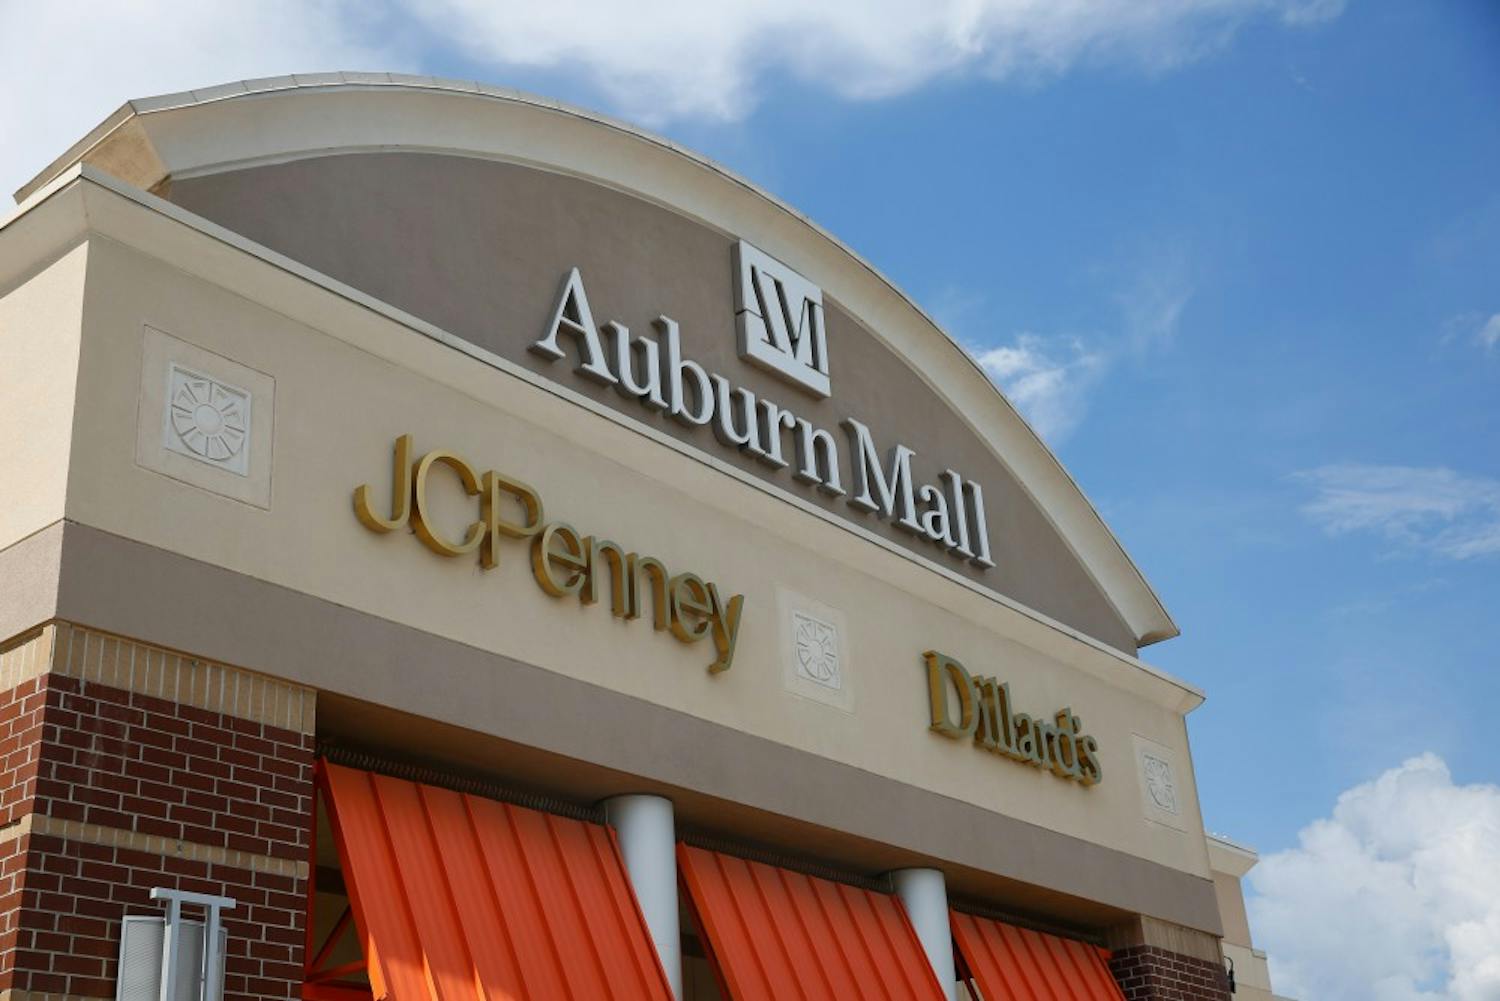 The Auburn Mall on Friday, Aug. 19, 2016 in Auburn, Ala.